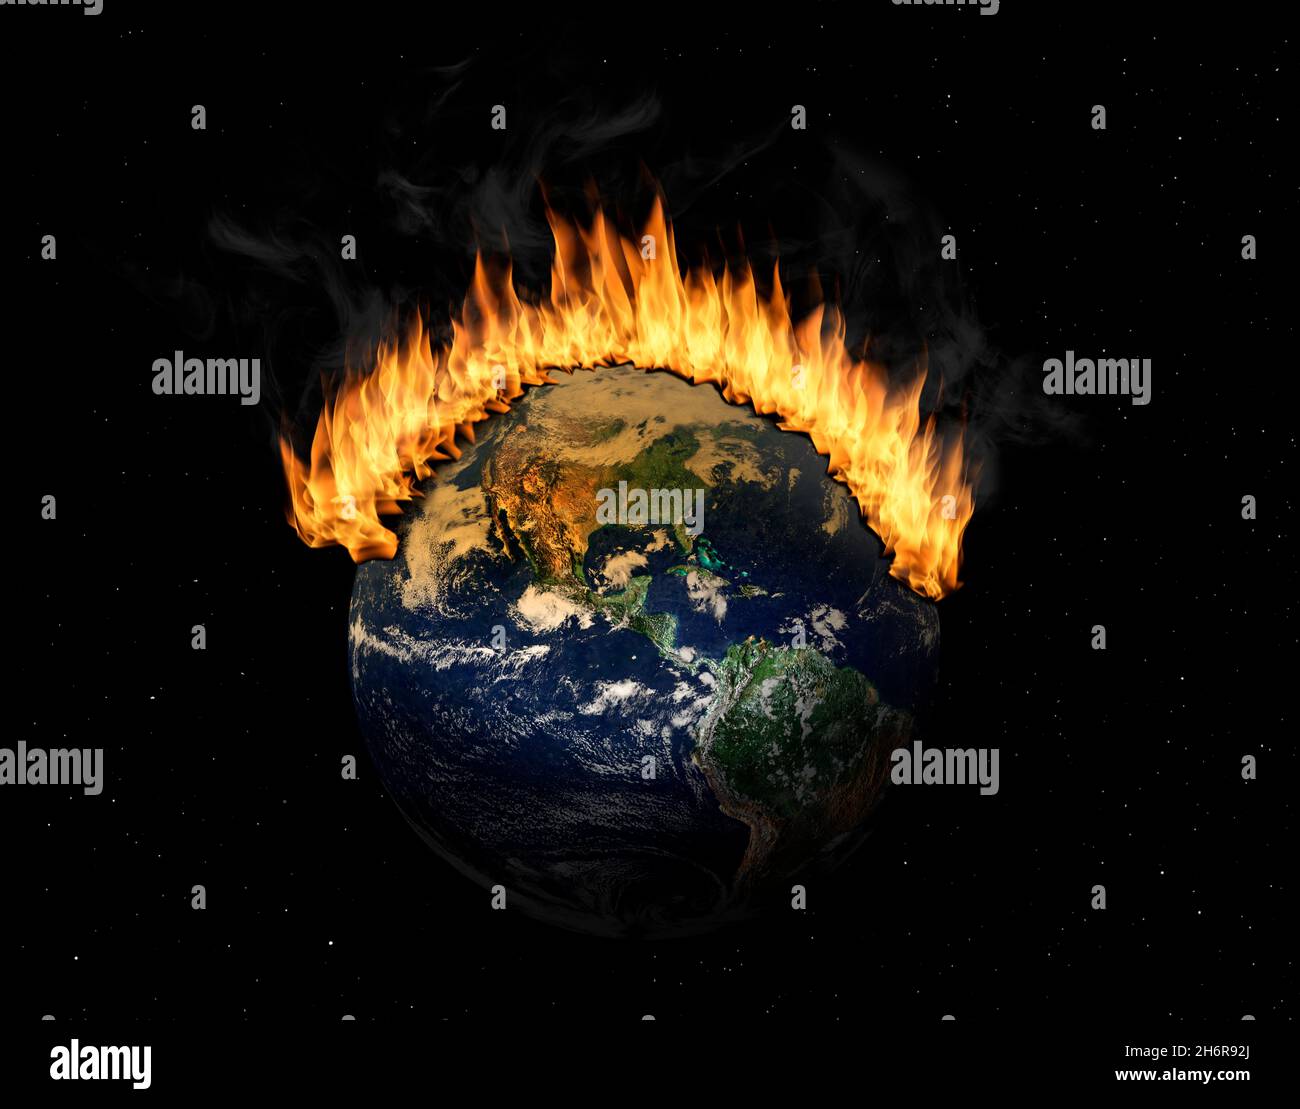 Der Planet Erde im Weltraum ist in Flammen verschlungen. Konzept der Klimakrise; Naturkatastrophen, globale Erwärmung, Apokalypse, Krieg, Urteilstag. Elemente Stockfoto